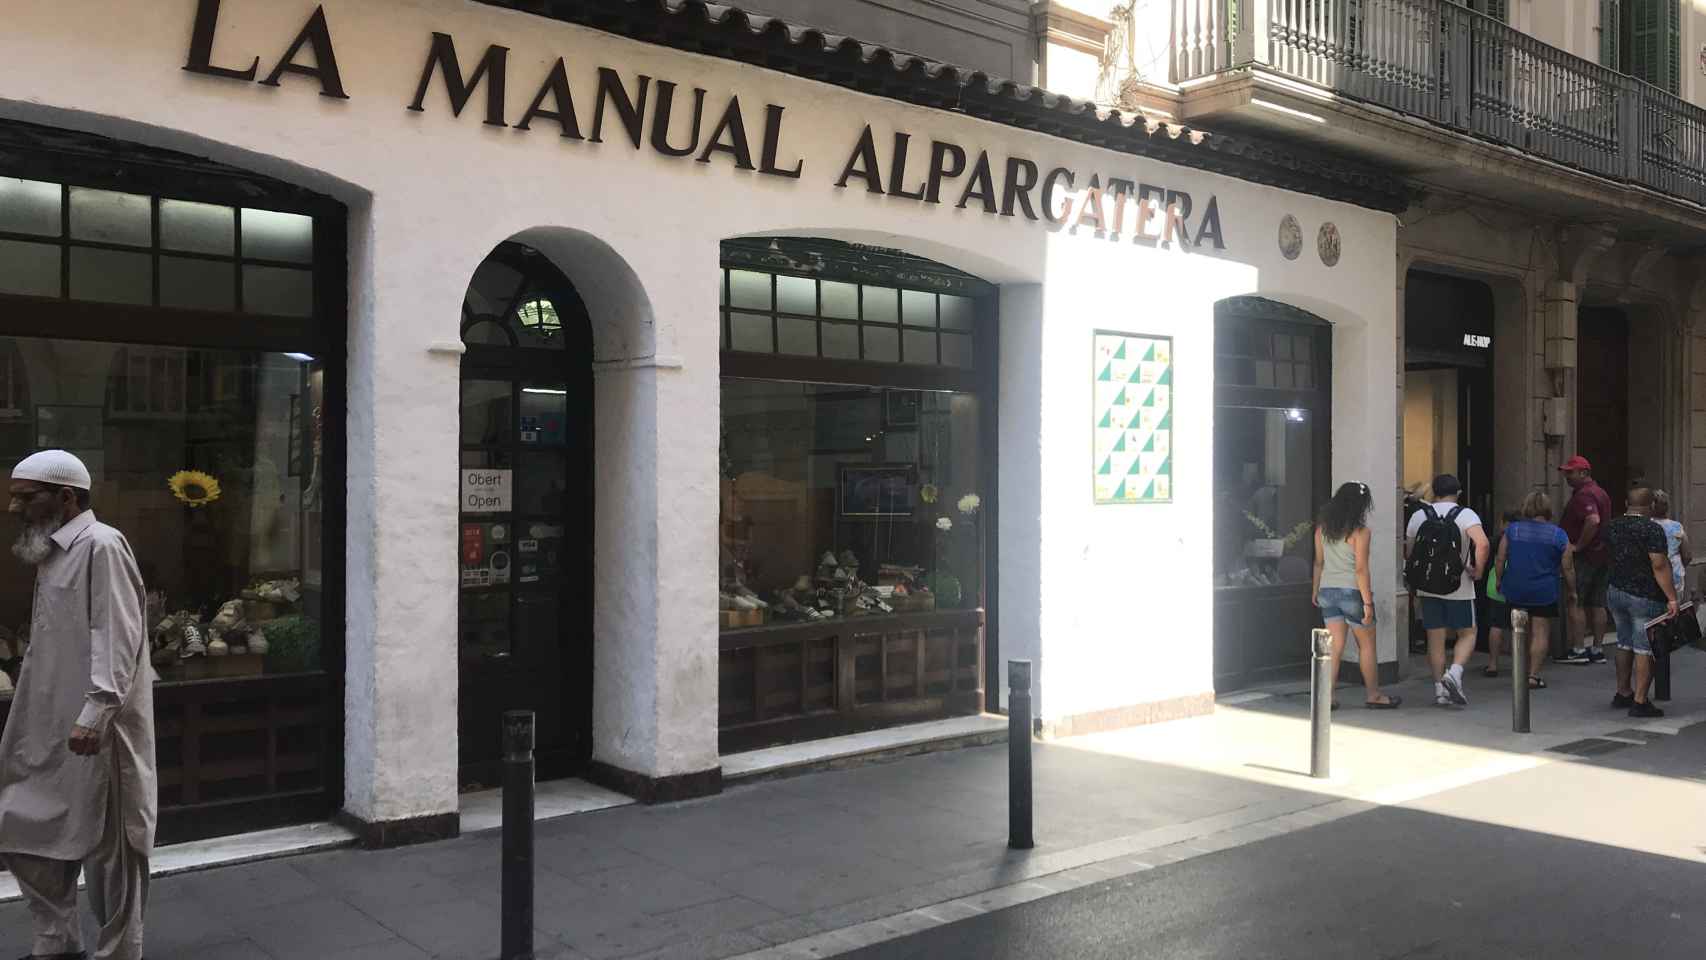 La Manual Alpargatera, una de las tiendas que resumen la esencia del Gòtic / MA